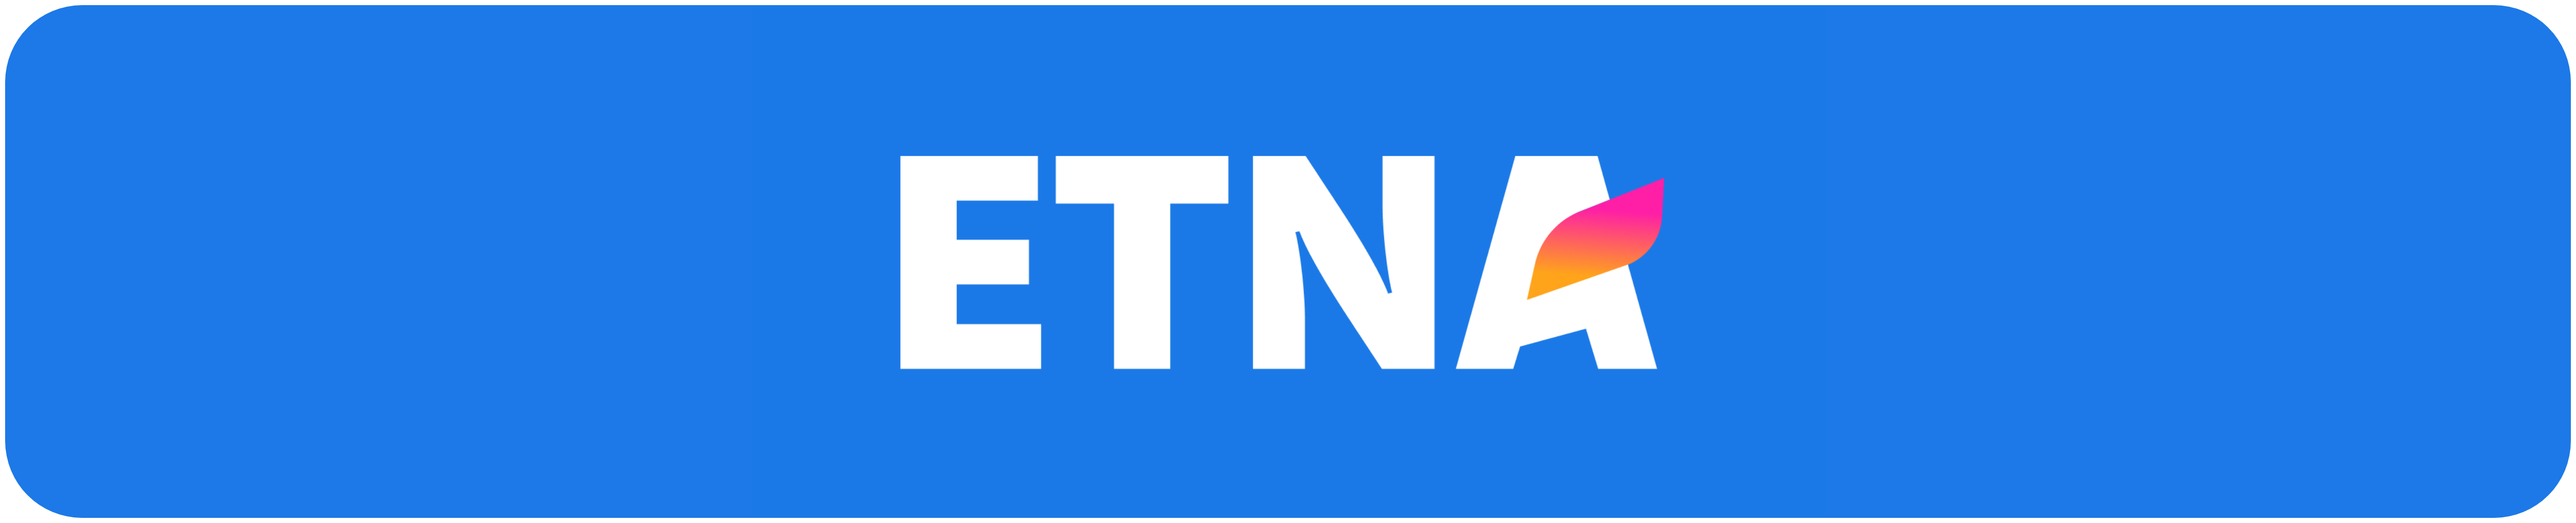 etna_logo.png